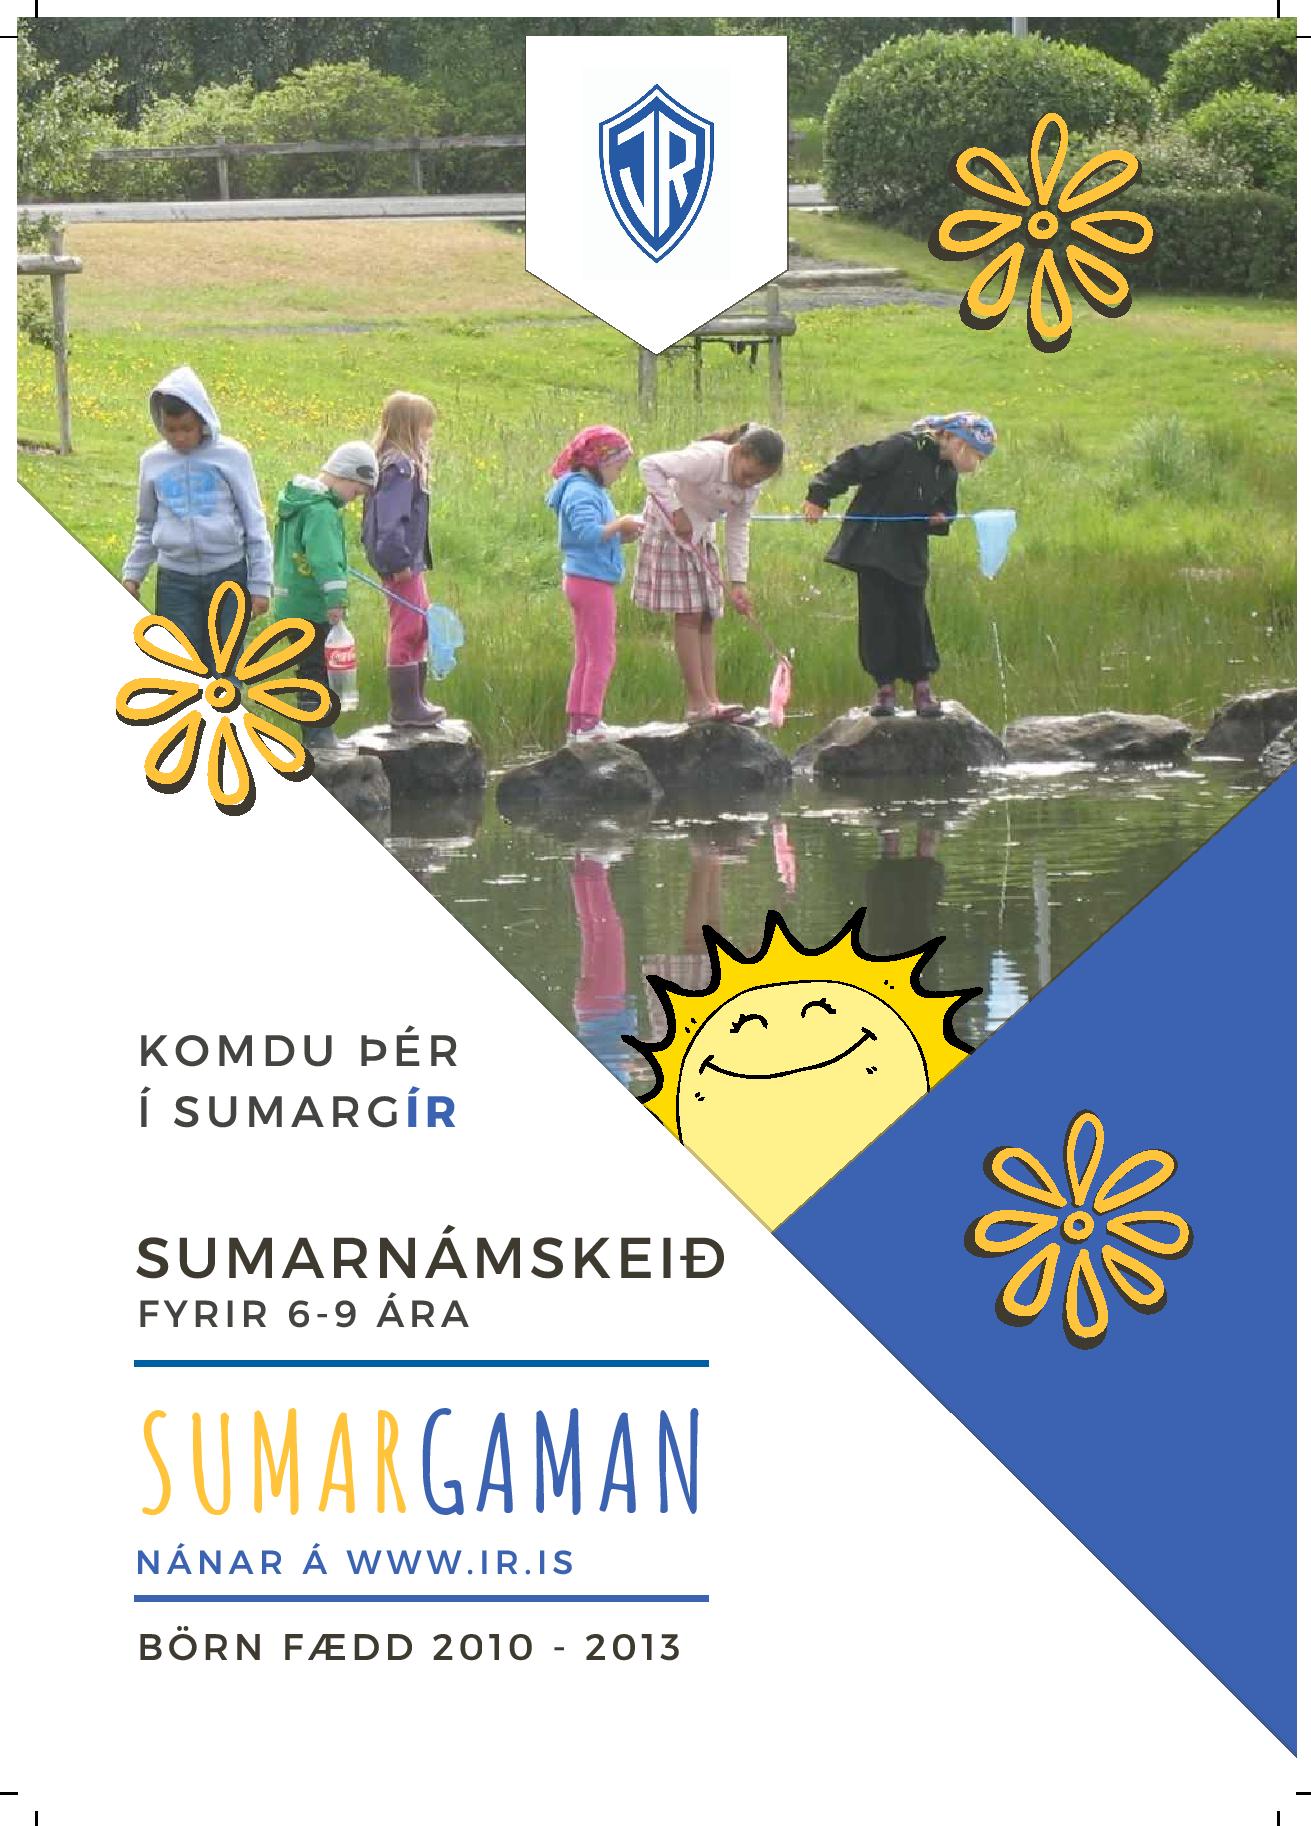 Komdu þér í sumargír: Sumargaman ÍR 2019 graphic